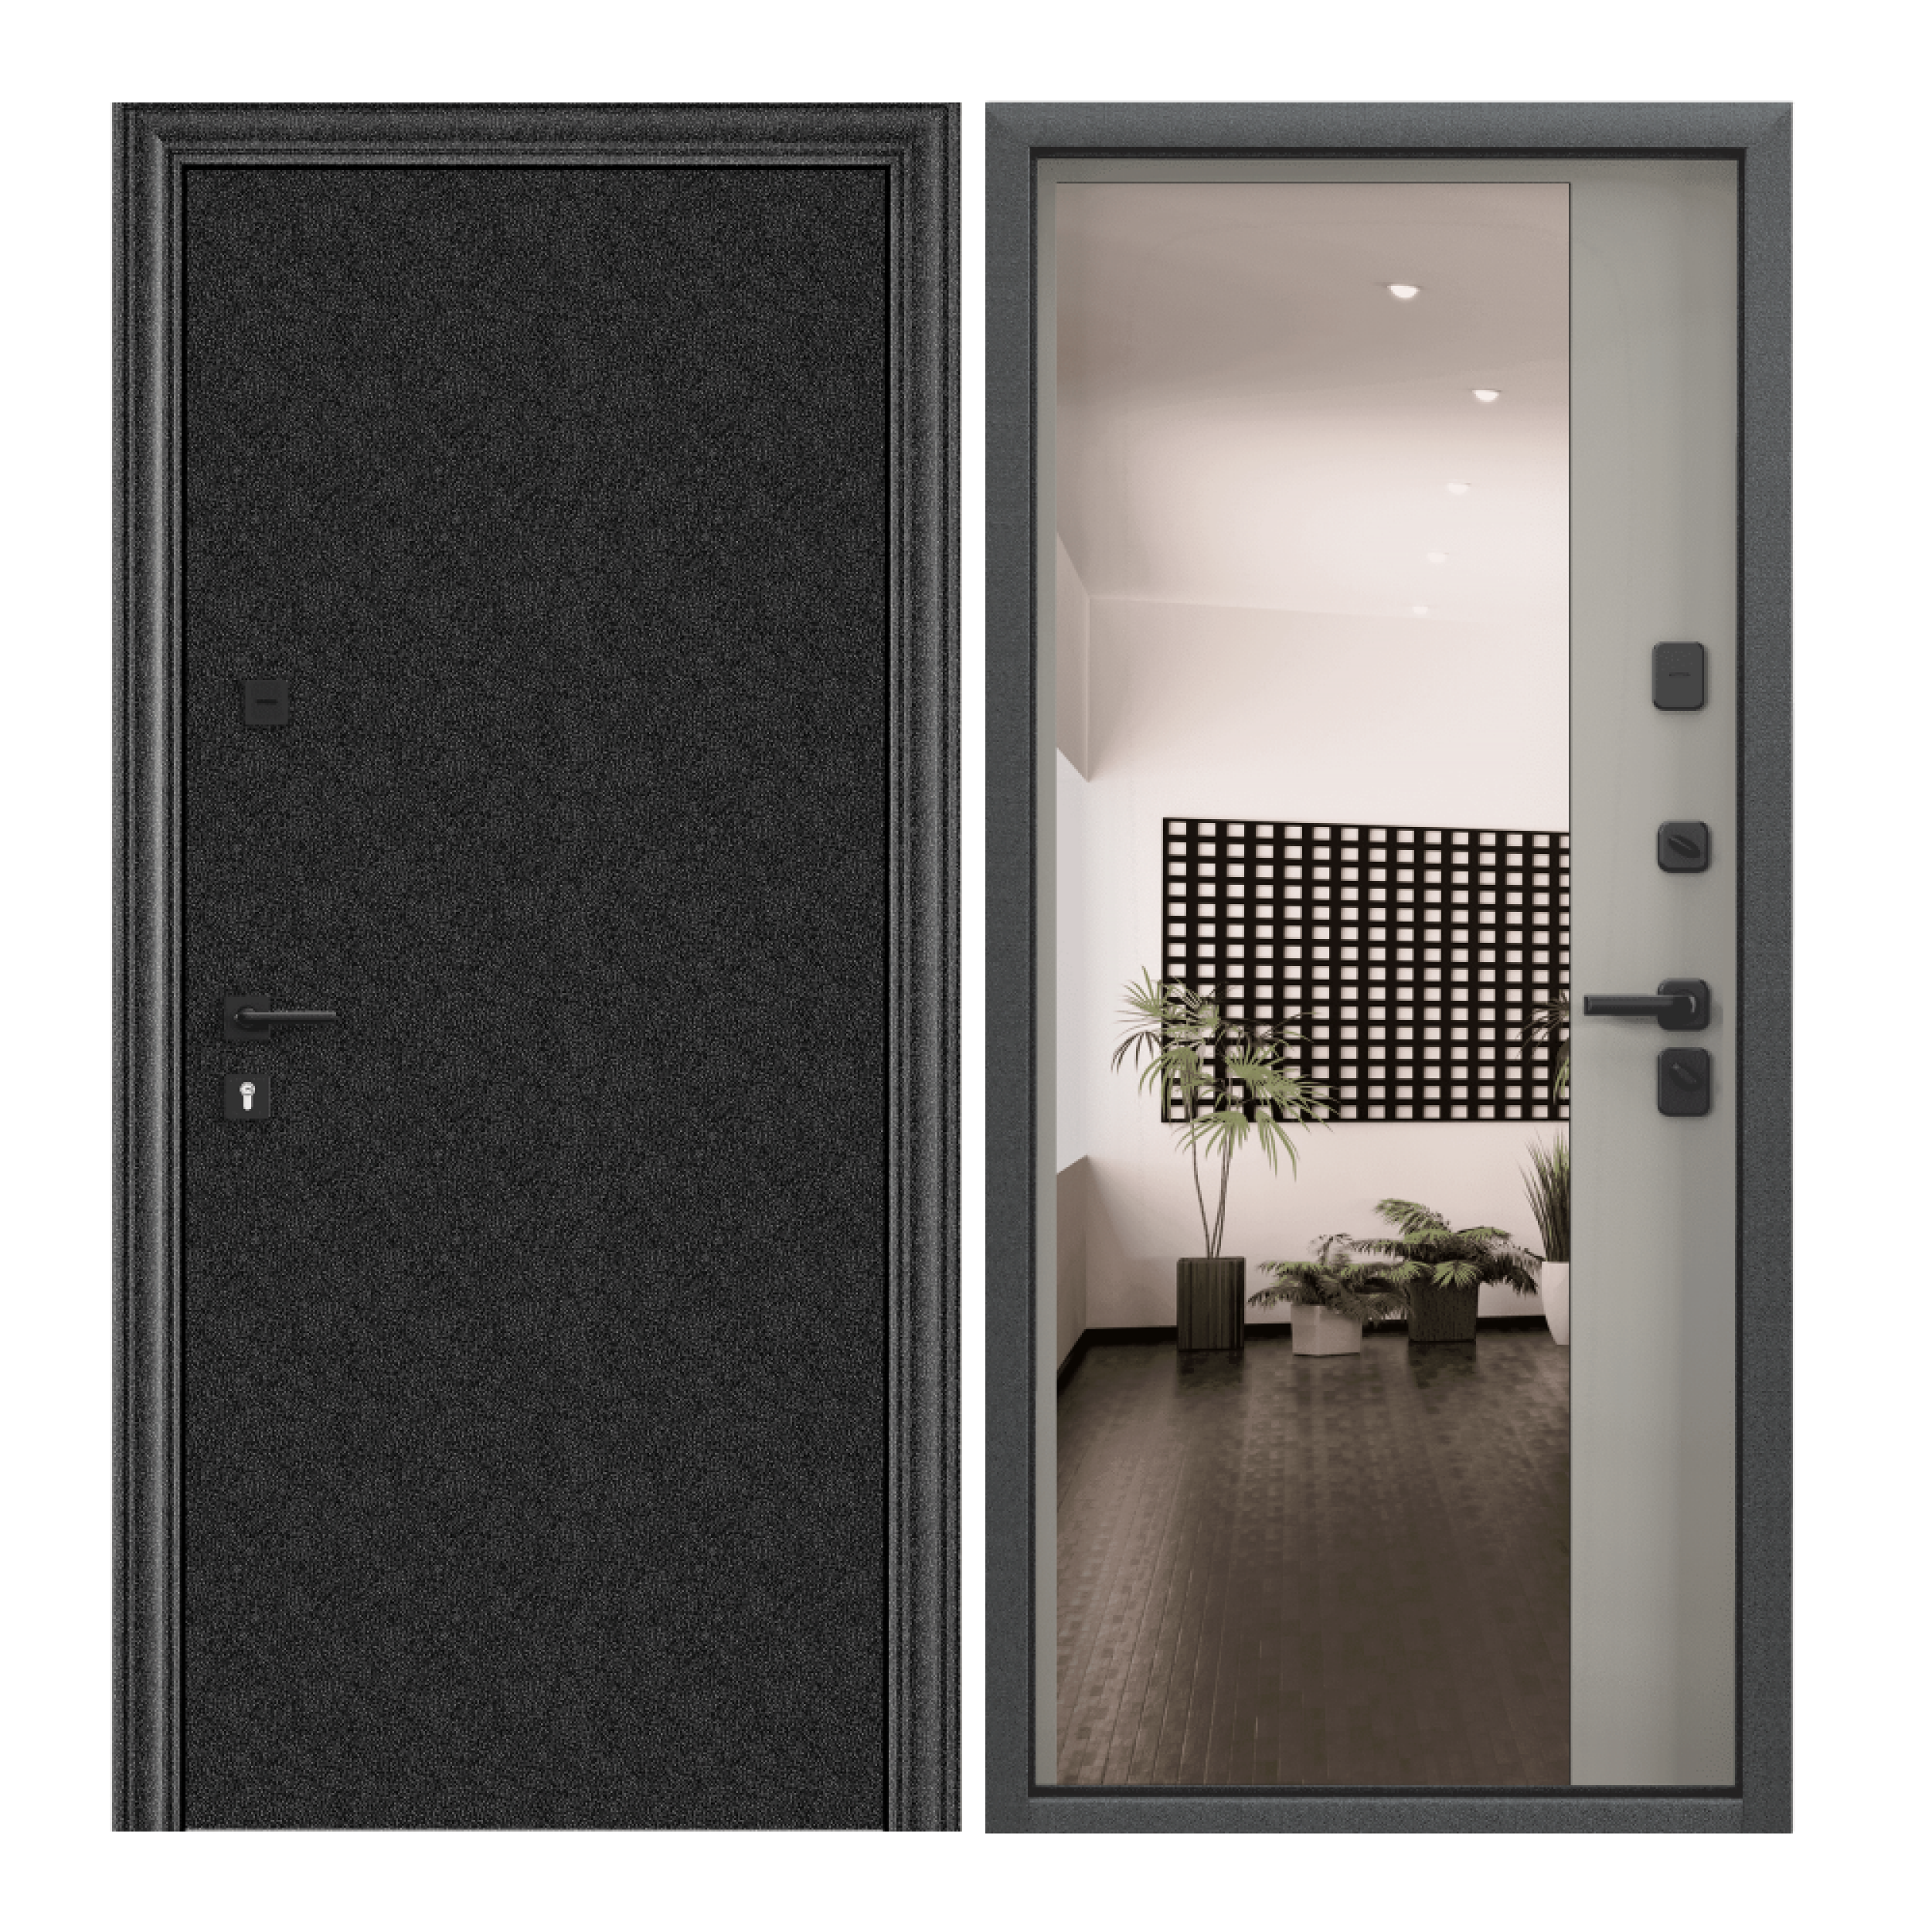 Дверь входная для квартиры Torex Comfort X 950х2050 правый, тепло-шумоизоляция, антикоррозийная защита, замки 4-го класса, зеркало, черный/серый